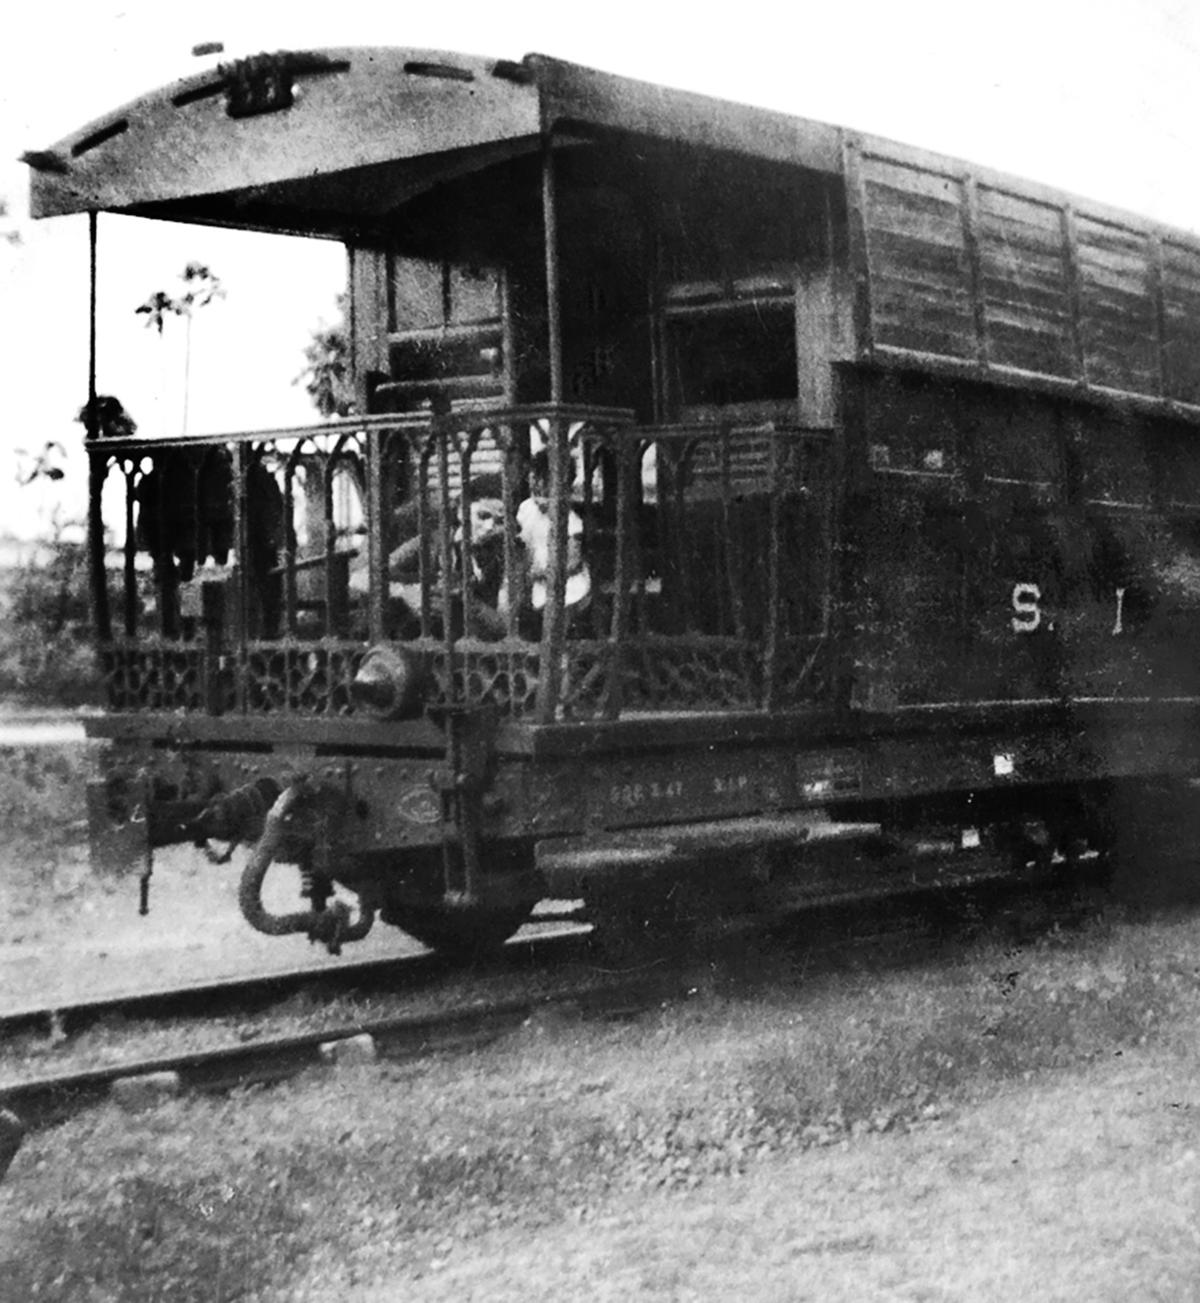 De spoorweg saloon, circa 1945